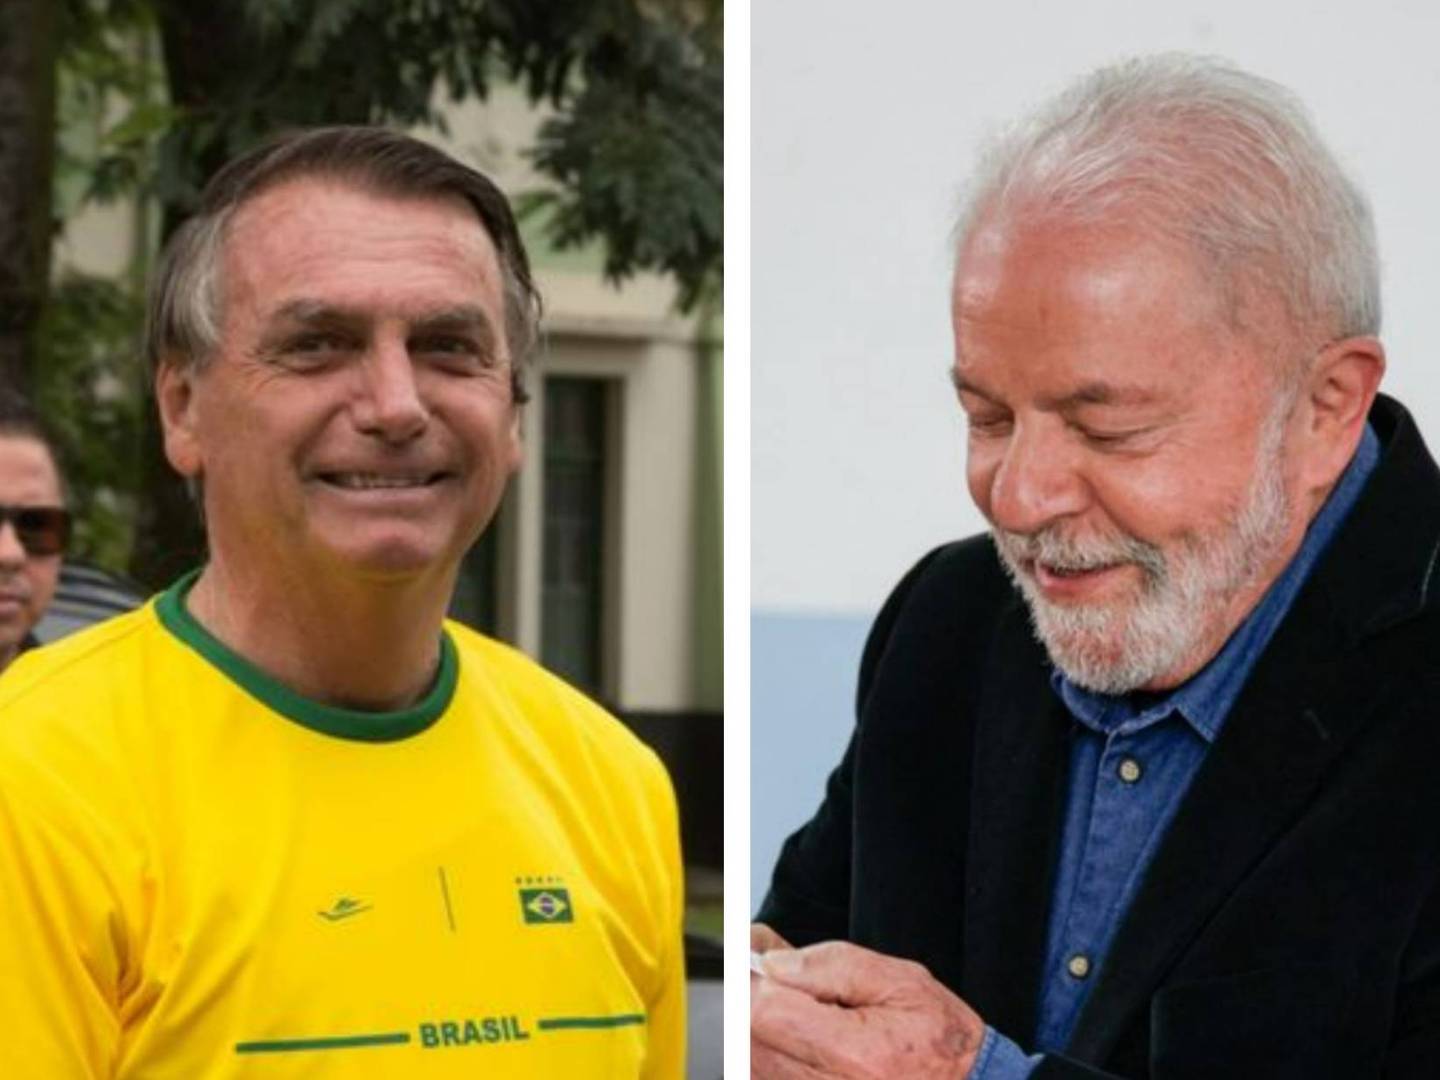 Los candidatos durante la jornada de votación de este domingo, uno en Río de Janeiro y el otro en San Pablo.